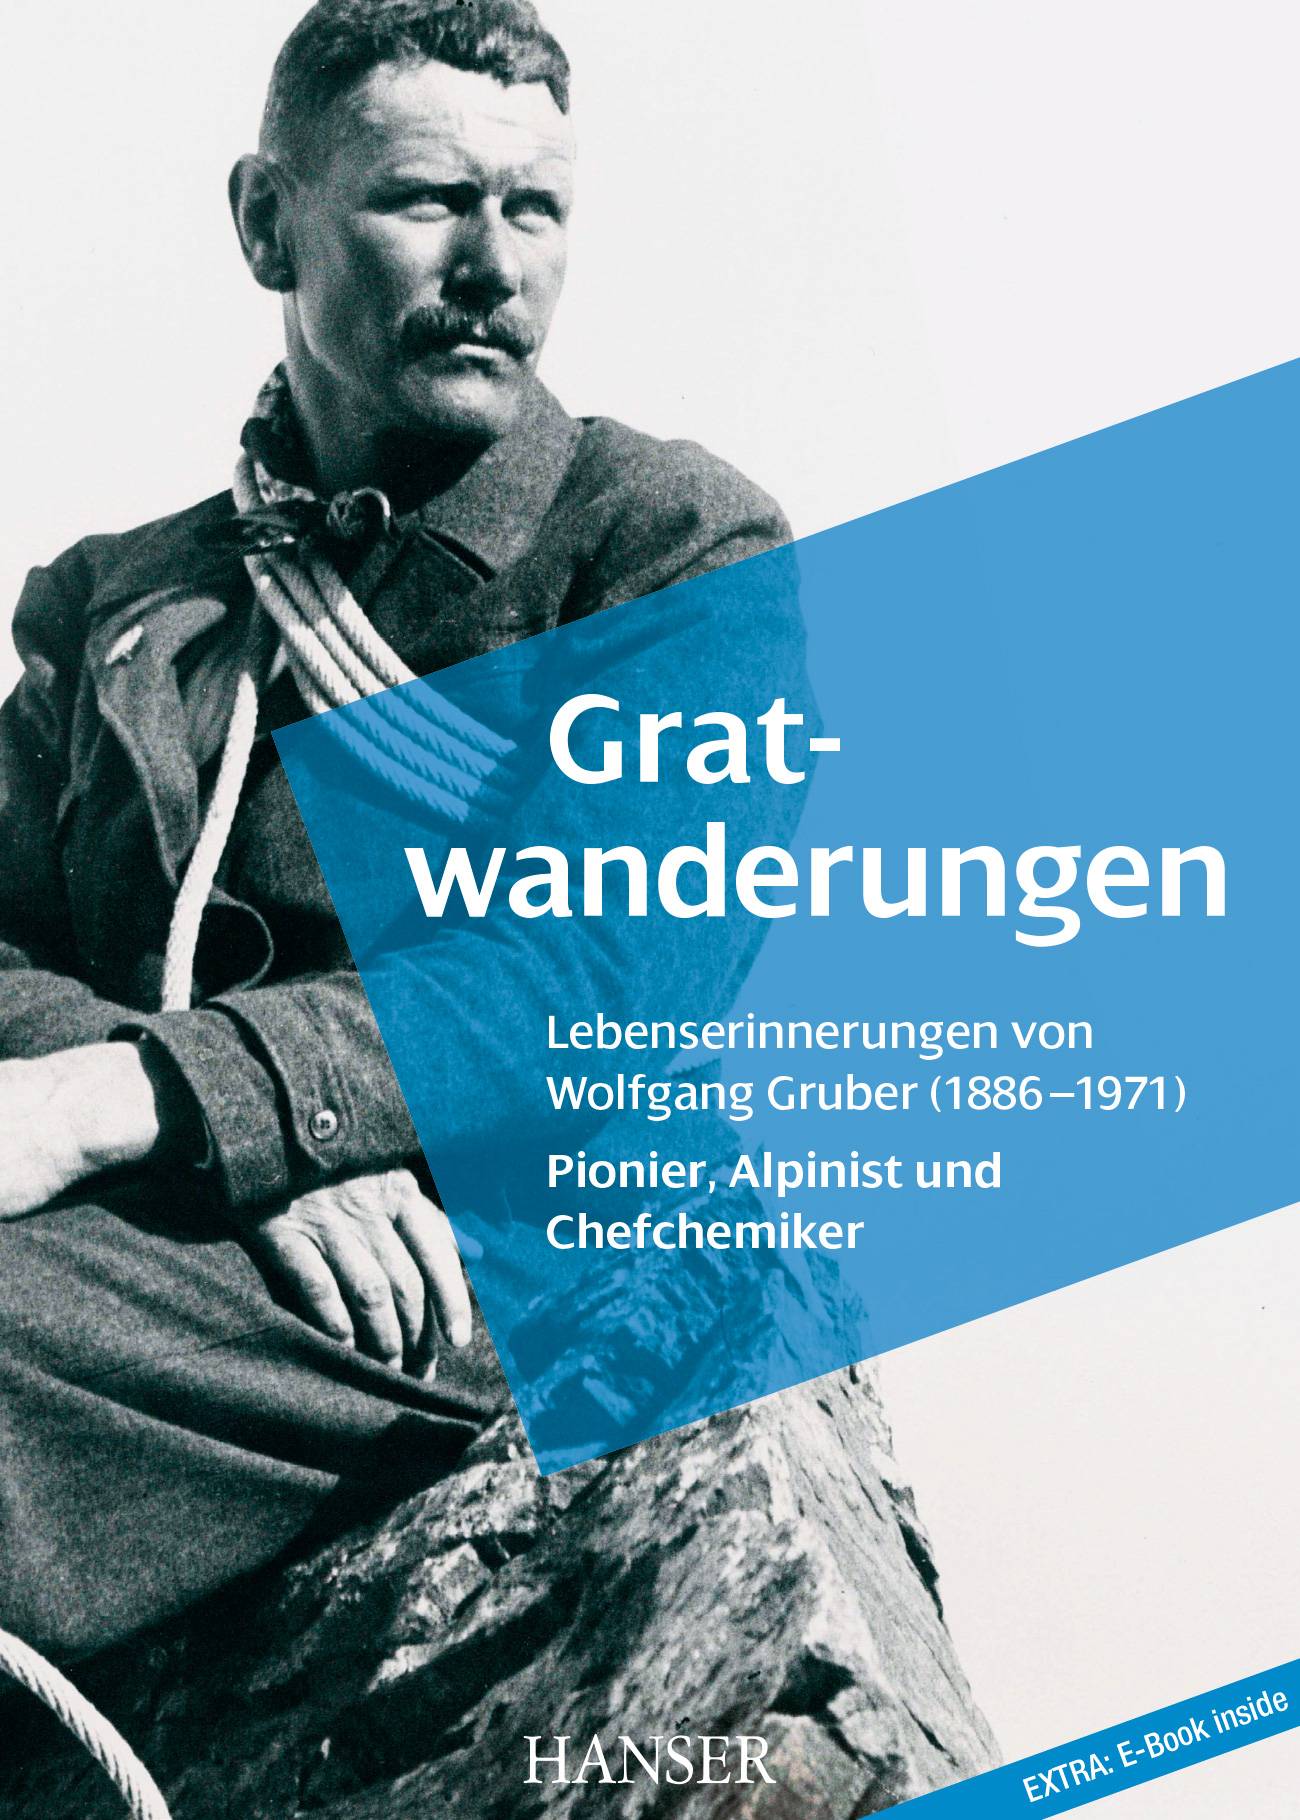 Memoiren des WACKER-Chefchemikers Dr. Wolfgang Gruber